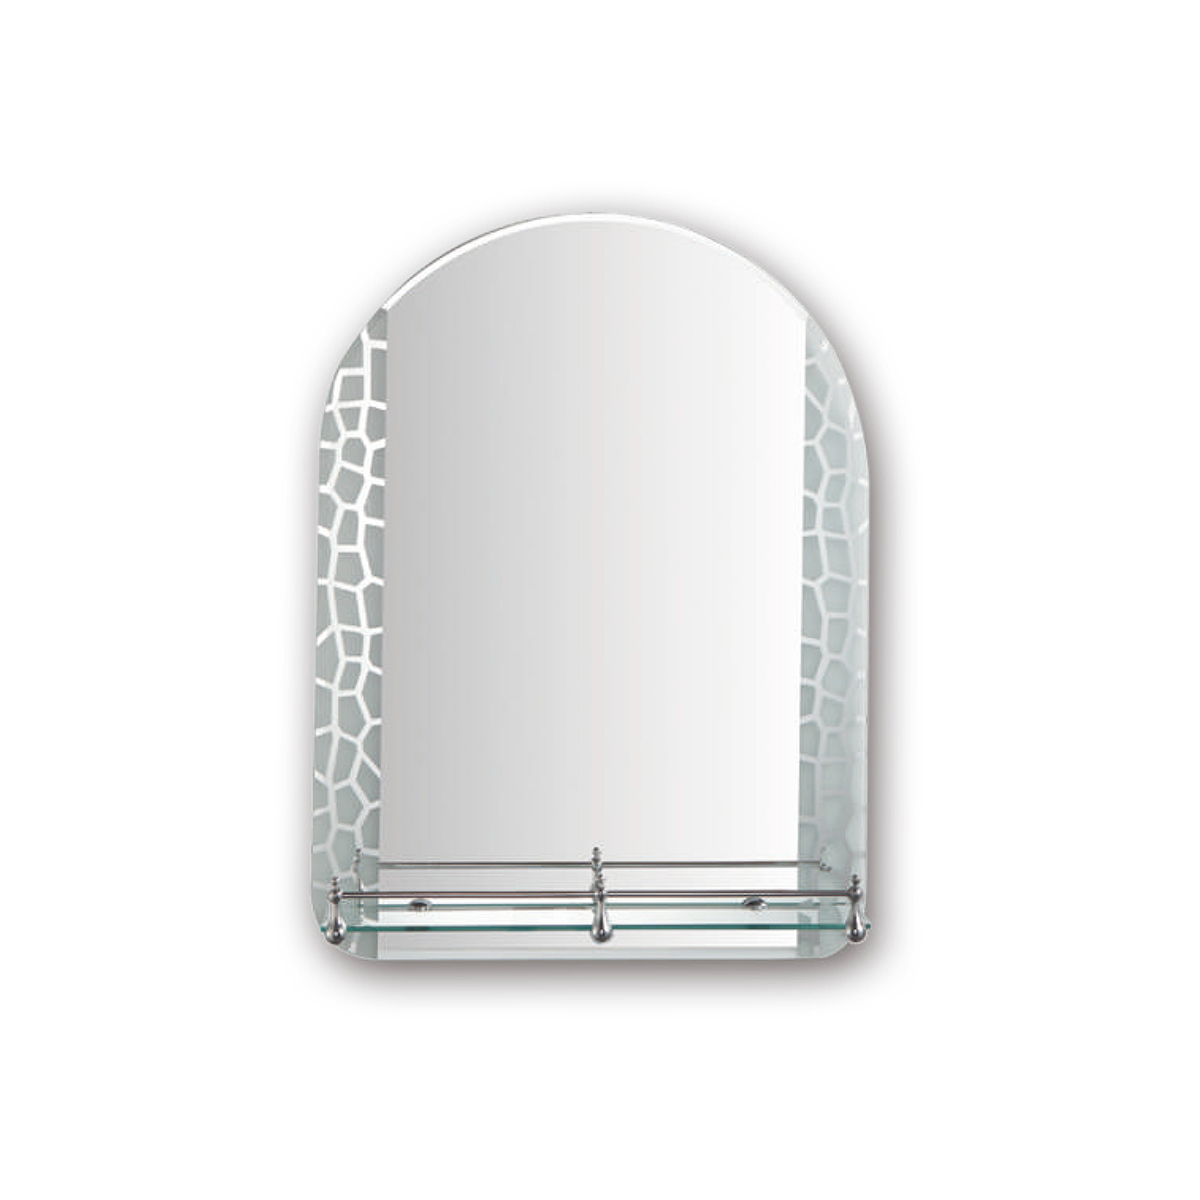 Зеркало фигурное Frap F694, с полкой, 60 x 45 см зеркало прямоугольное frap f693 60 x 45 см